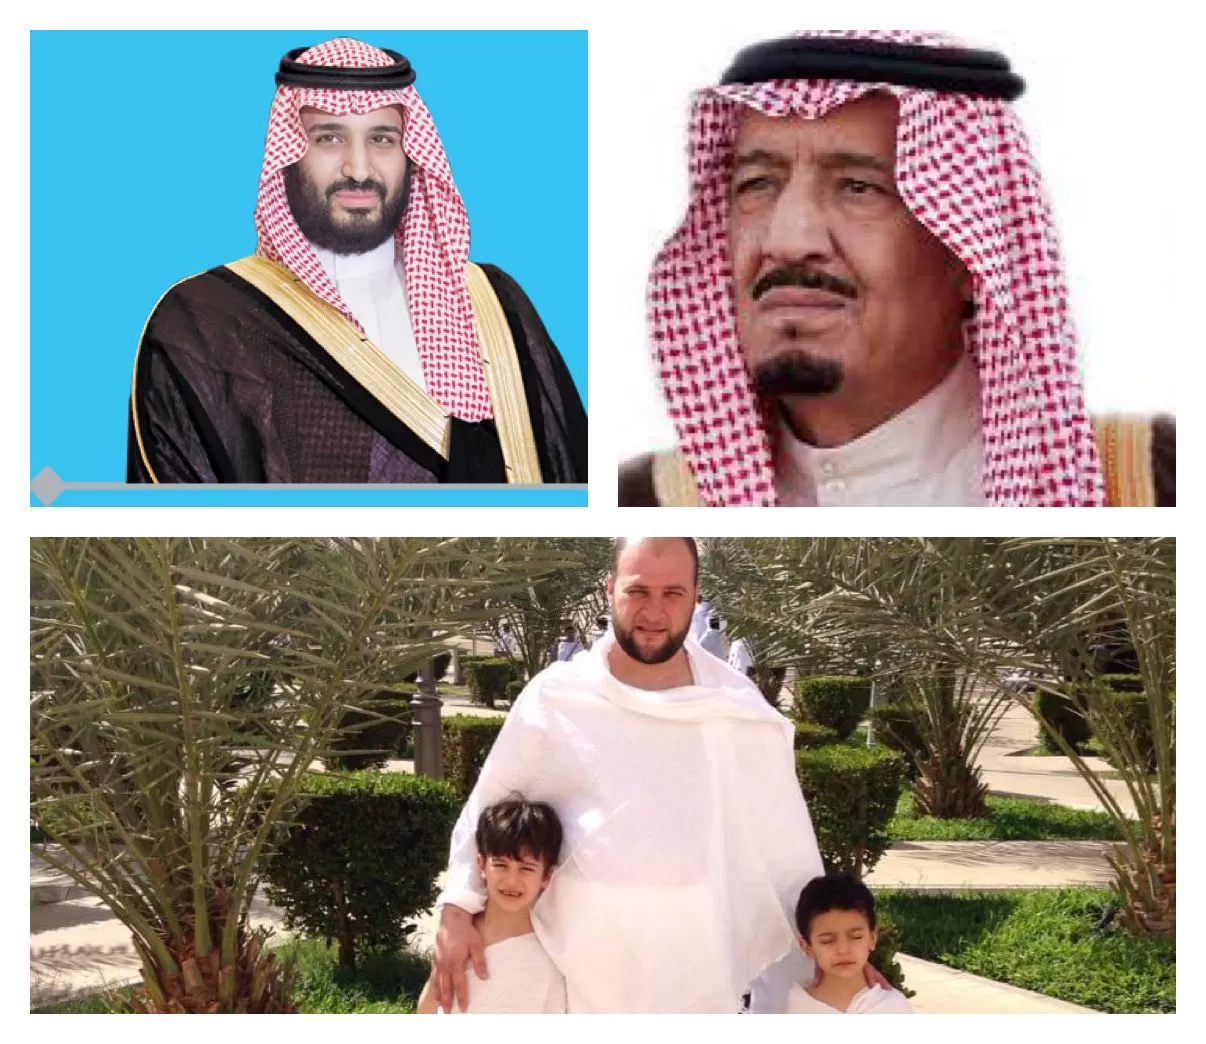 مدار الساعة,أخبار الأردن,اخبار الاردن,المملكة العربية السعودية,الأمير محمد بن سلمان